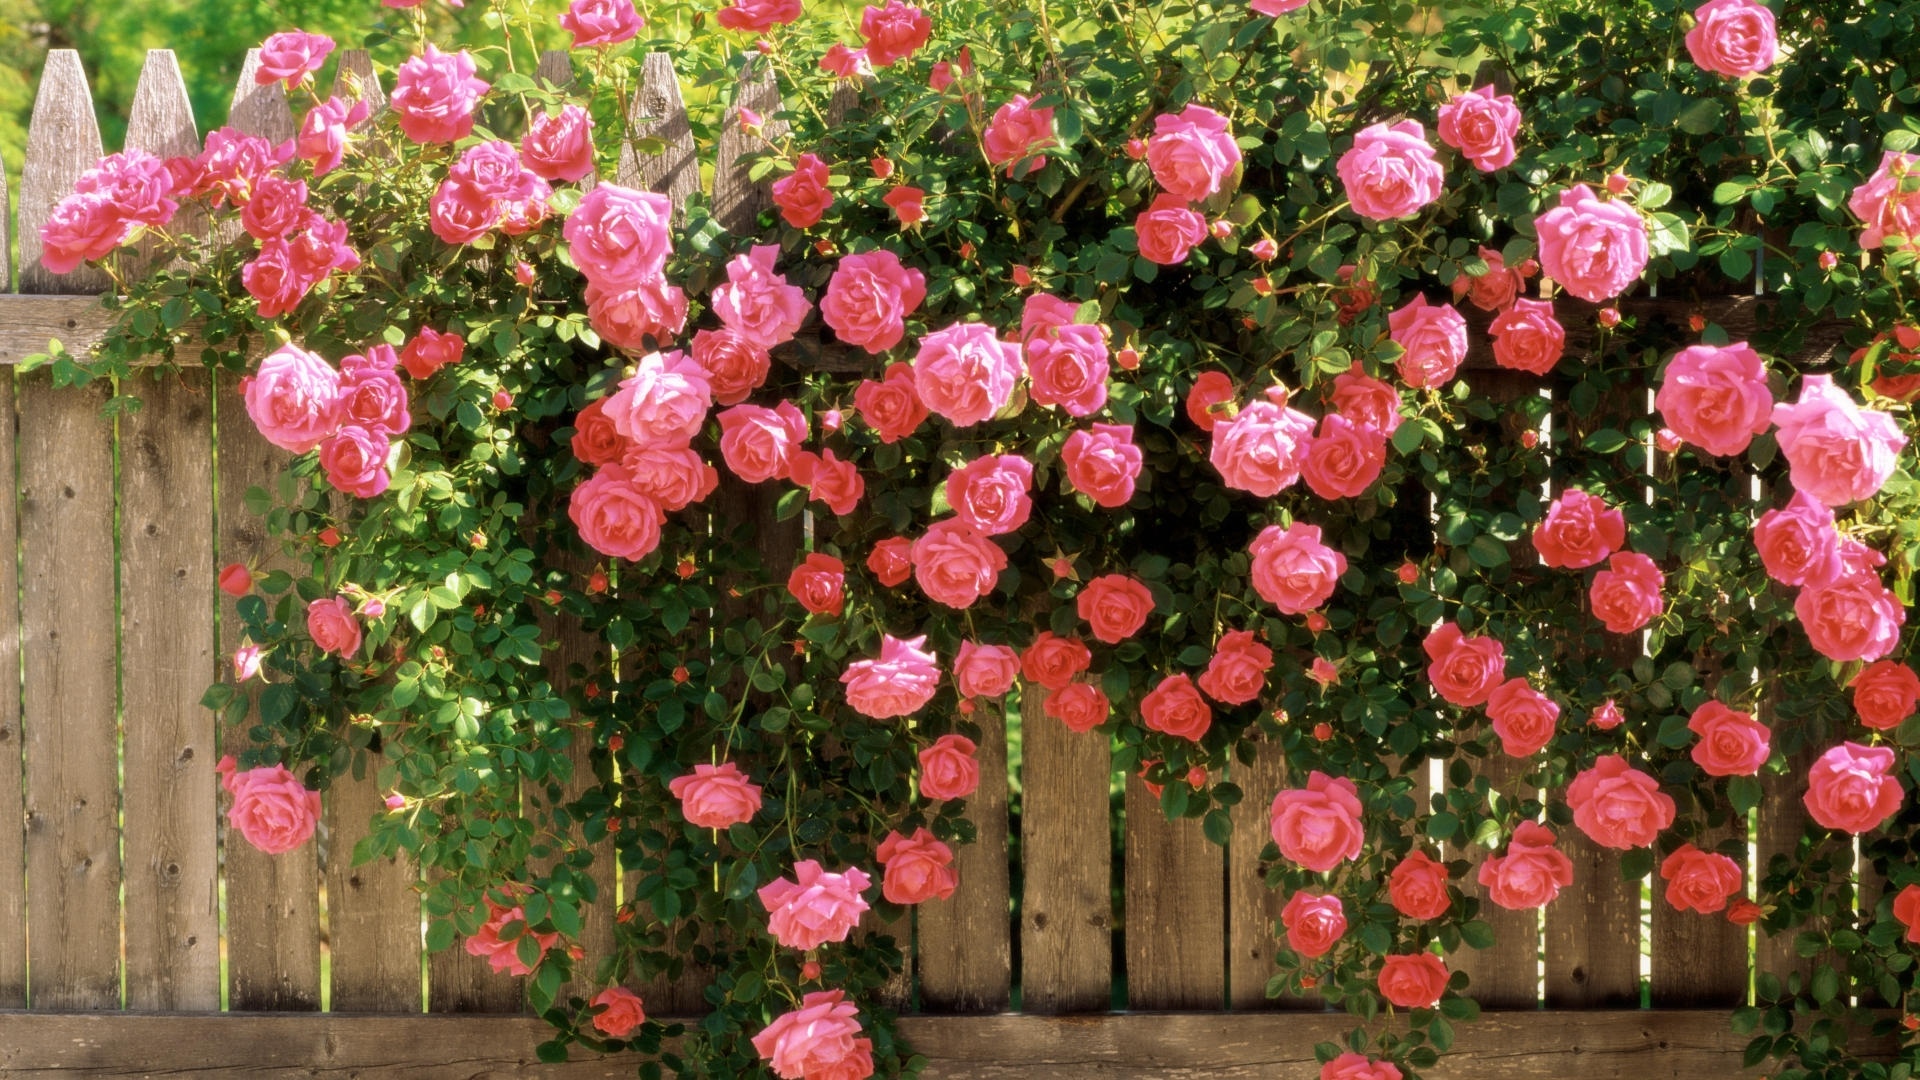 玫瑰篱笆花粉红色的爱春天高清壁纸,高清图片,壁纸,自然风景